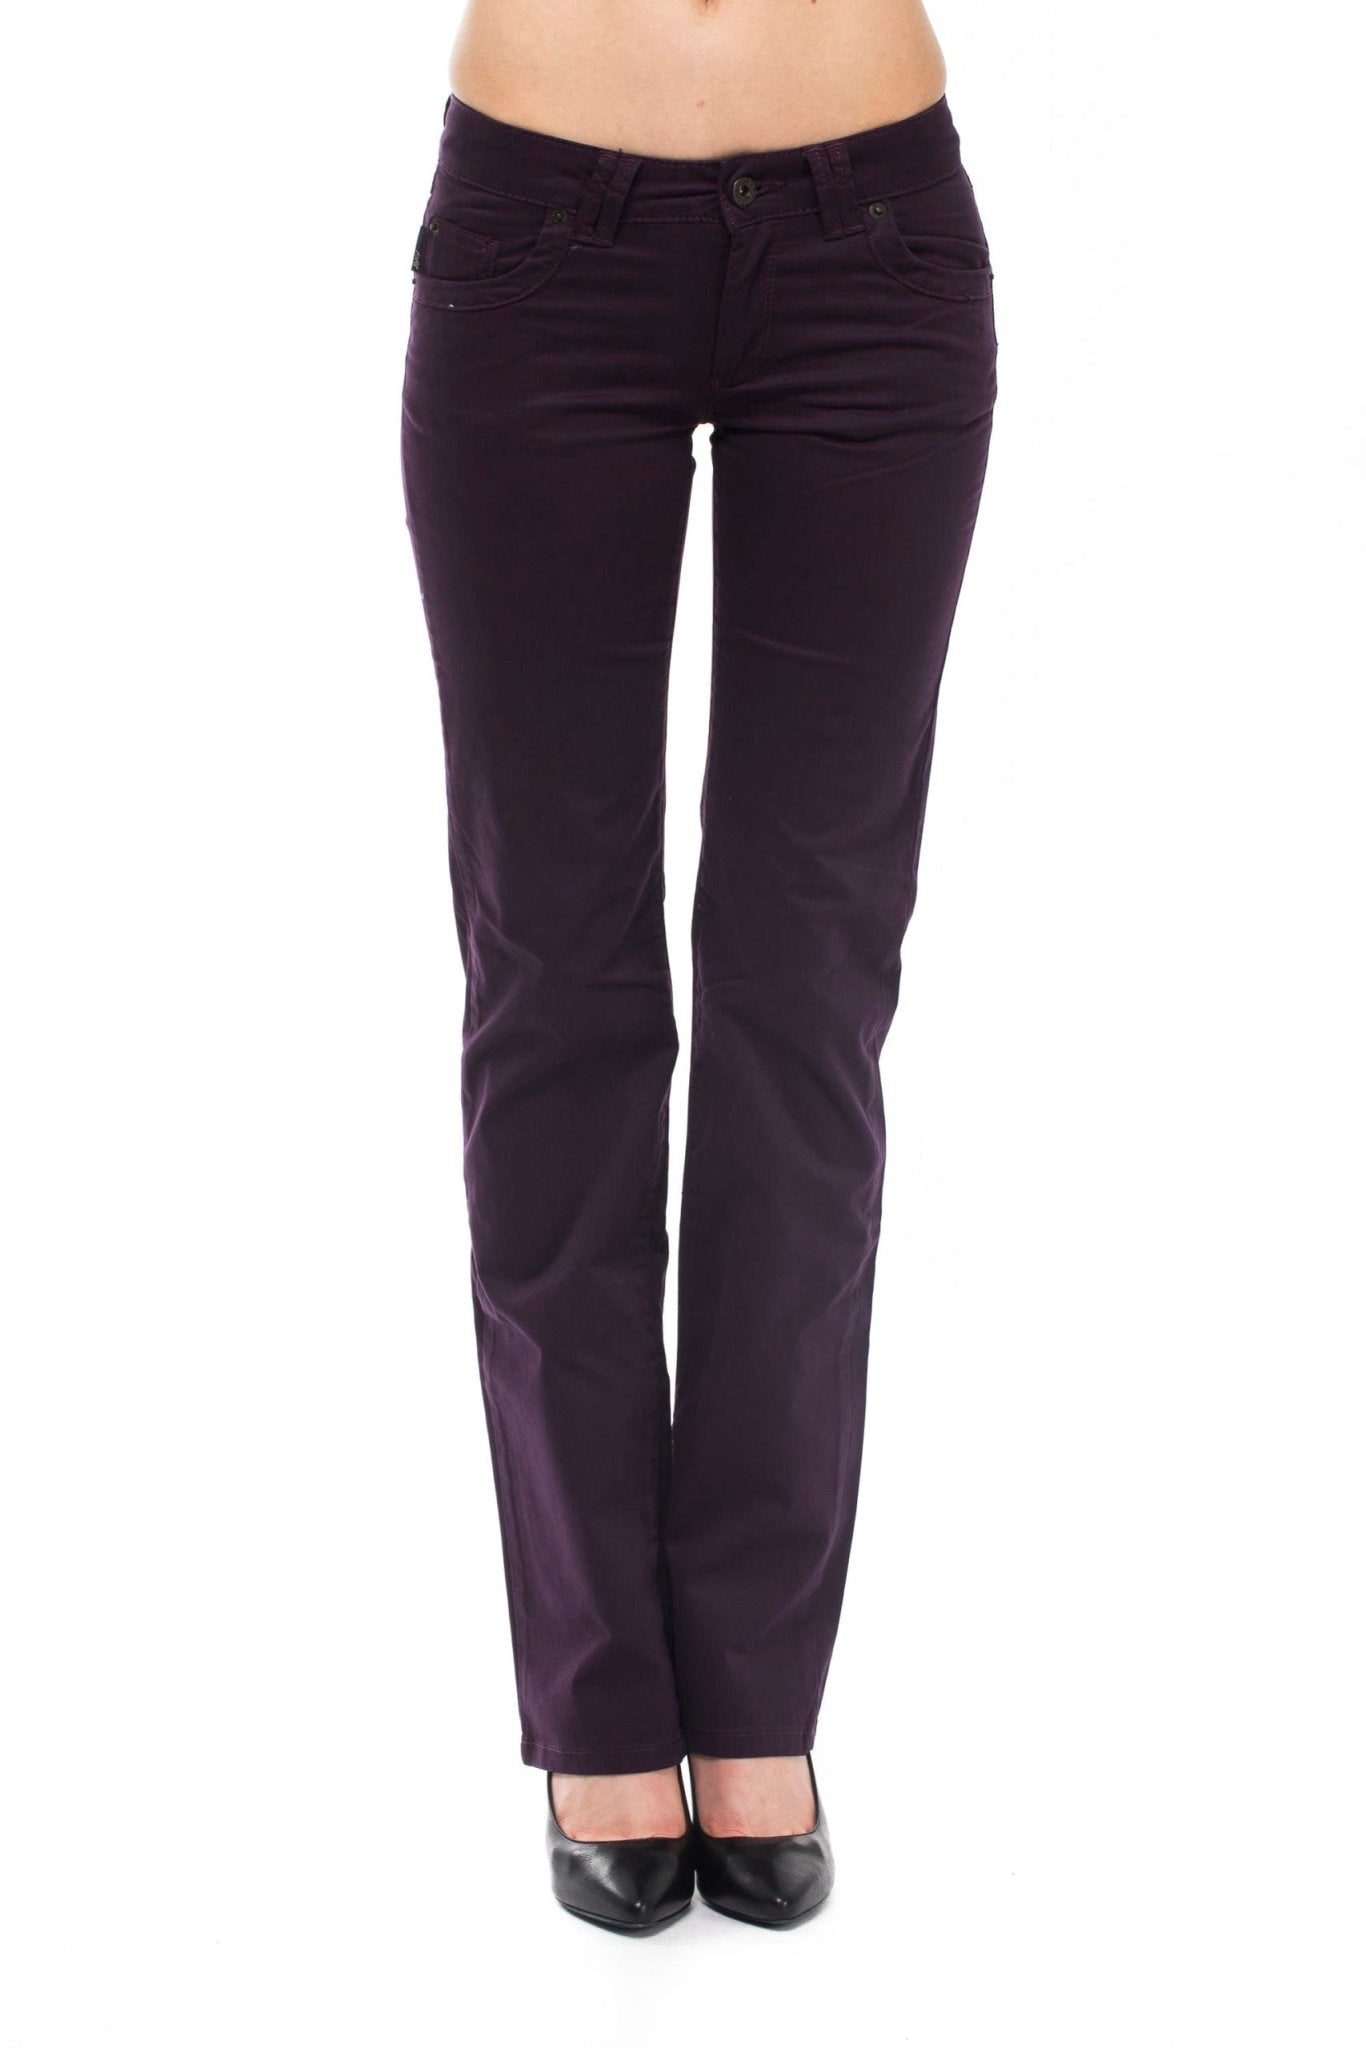 Ungaro Fever Violet Cotton Jeans & Pant - Fizigo